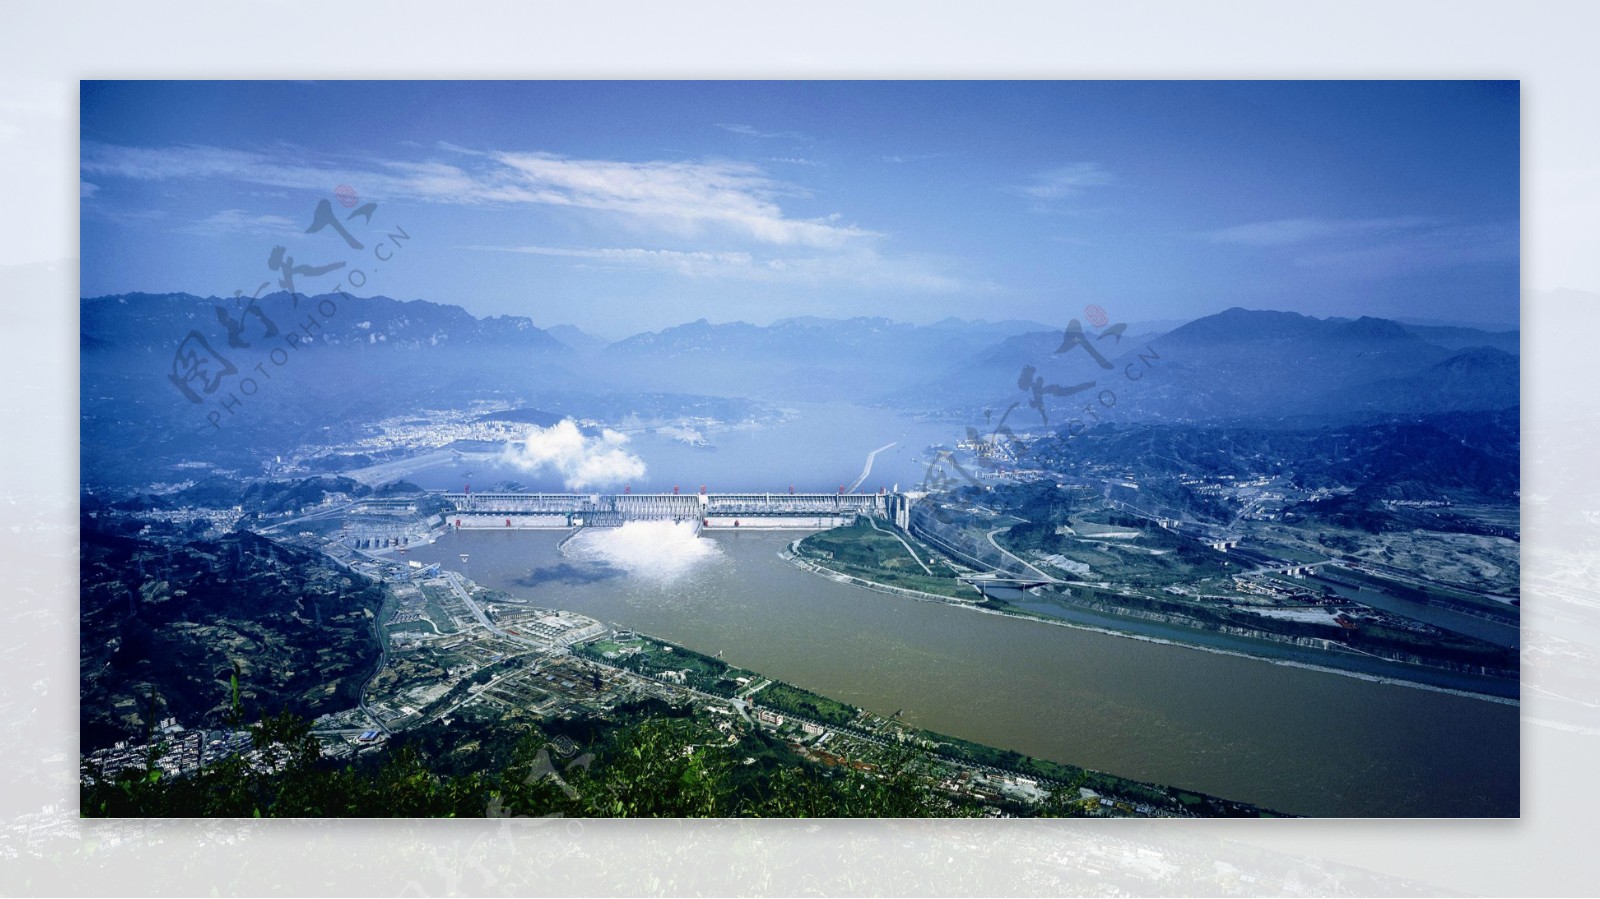 三峡水利大坝图片